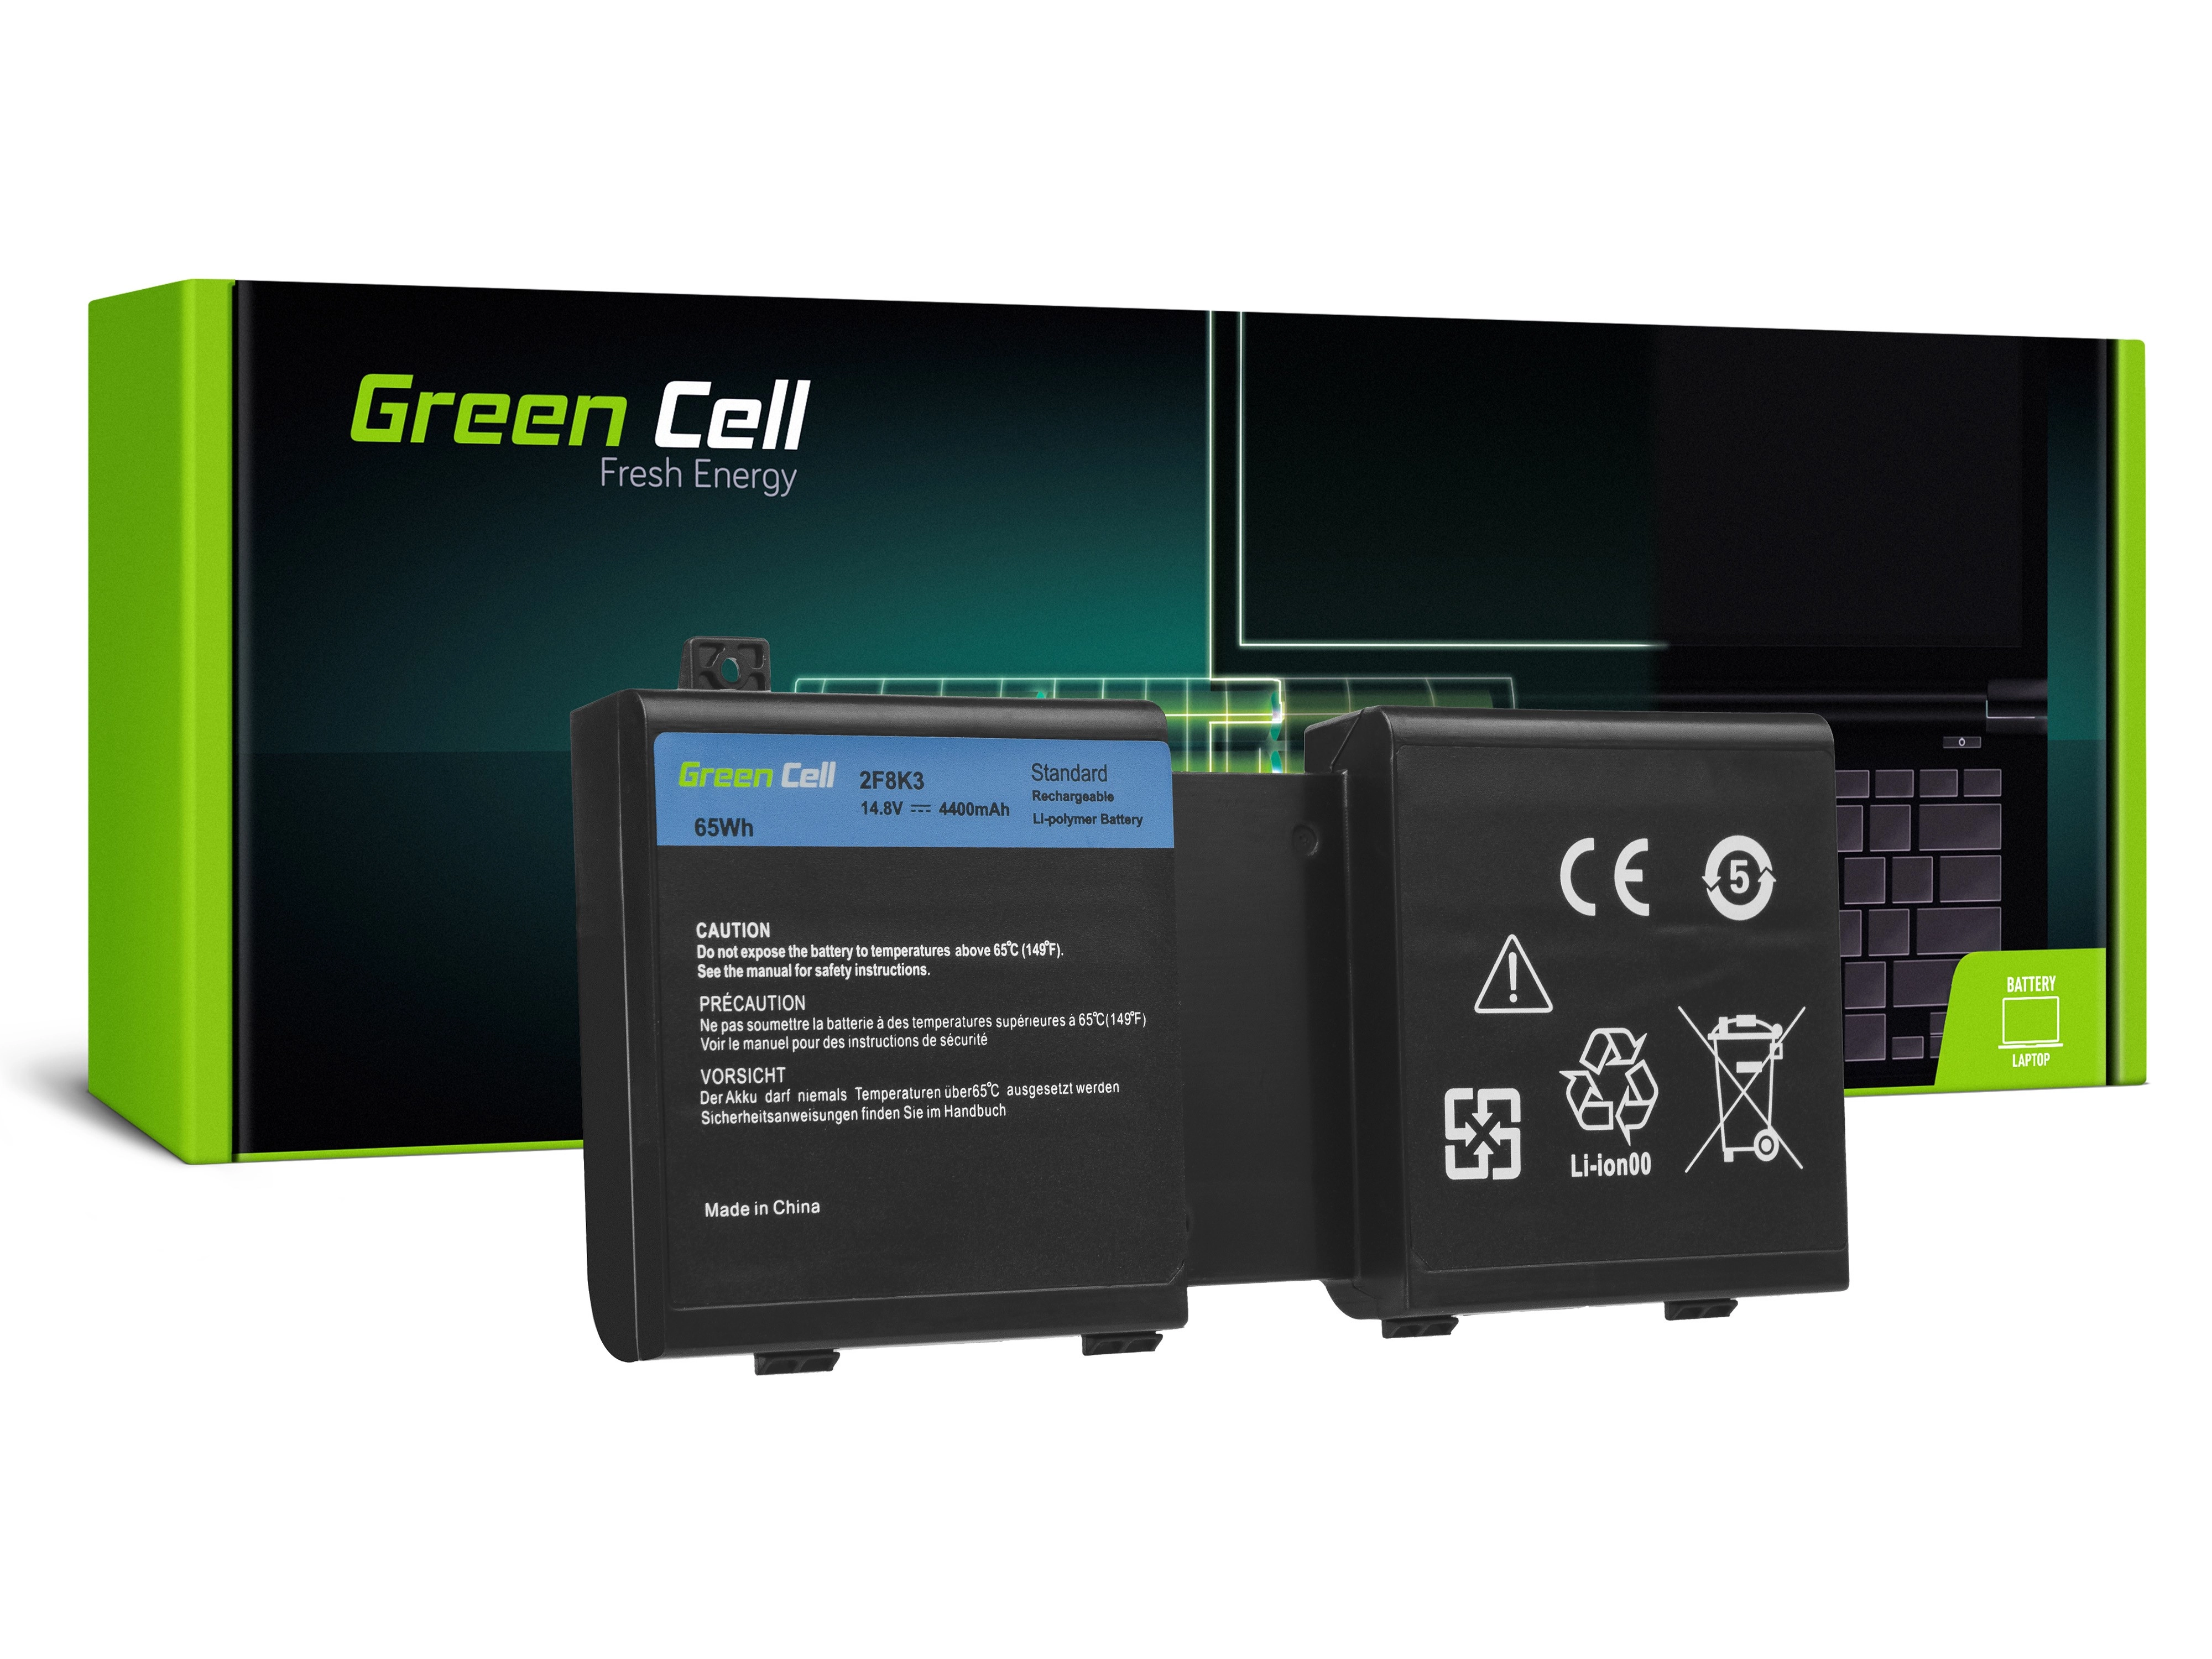 Green Cell Battery for Dell Alienware 17 18 / 14,4V 4400mAh